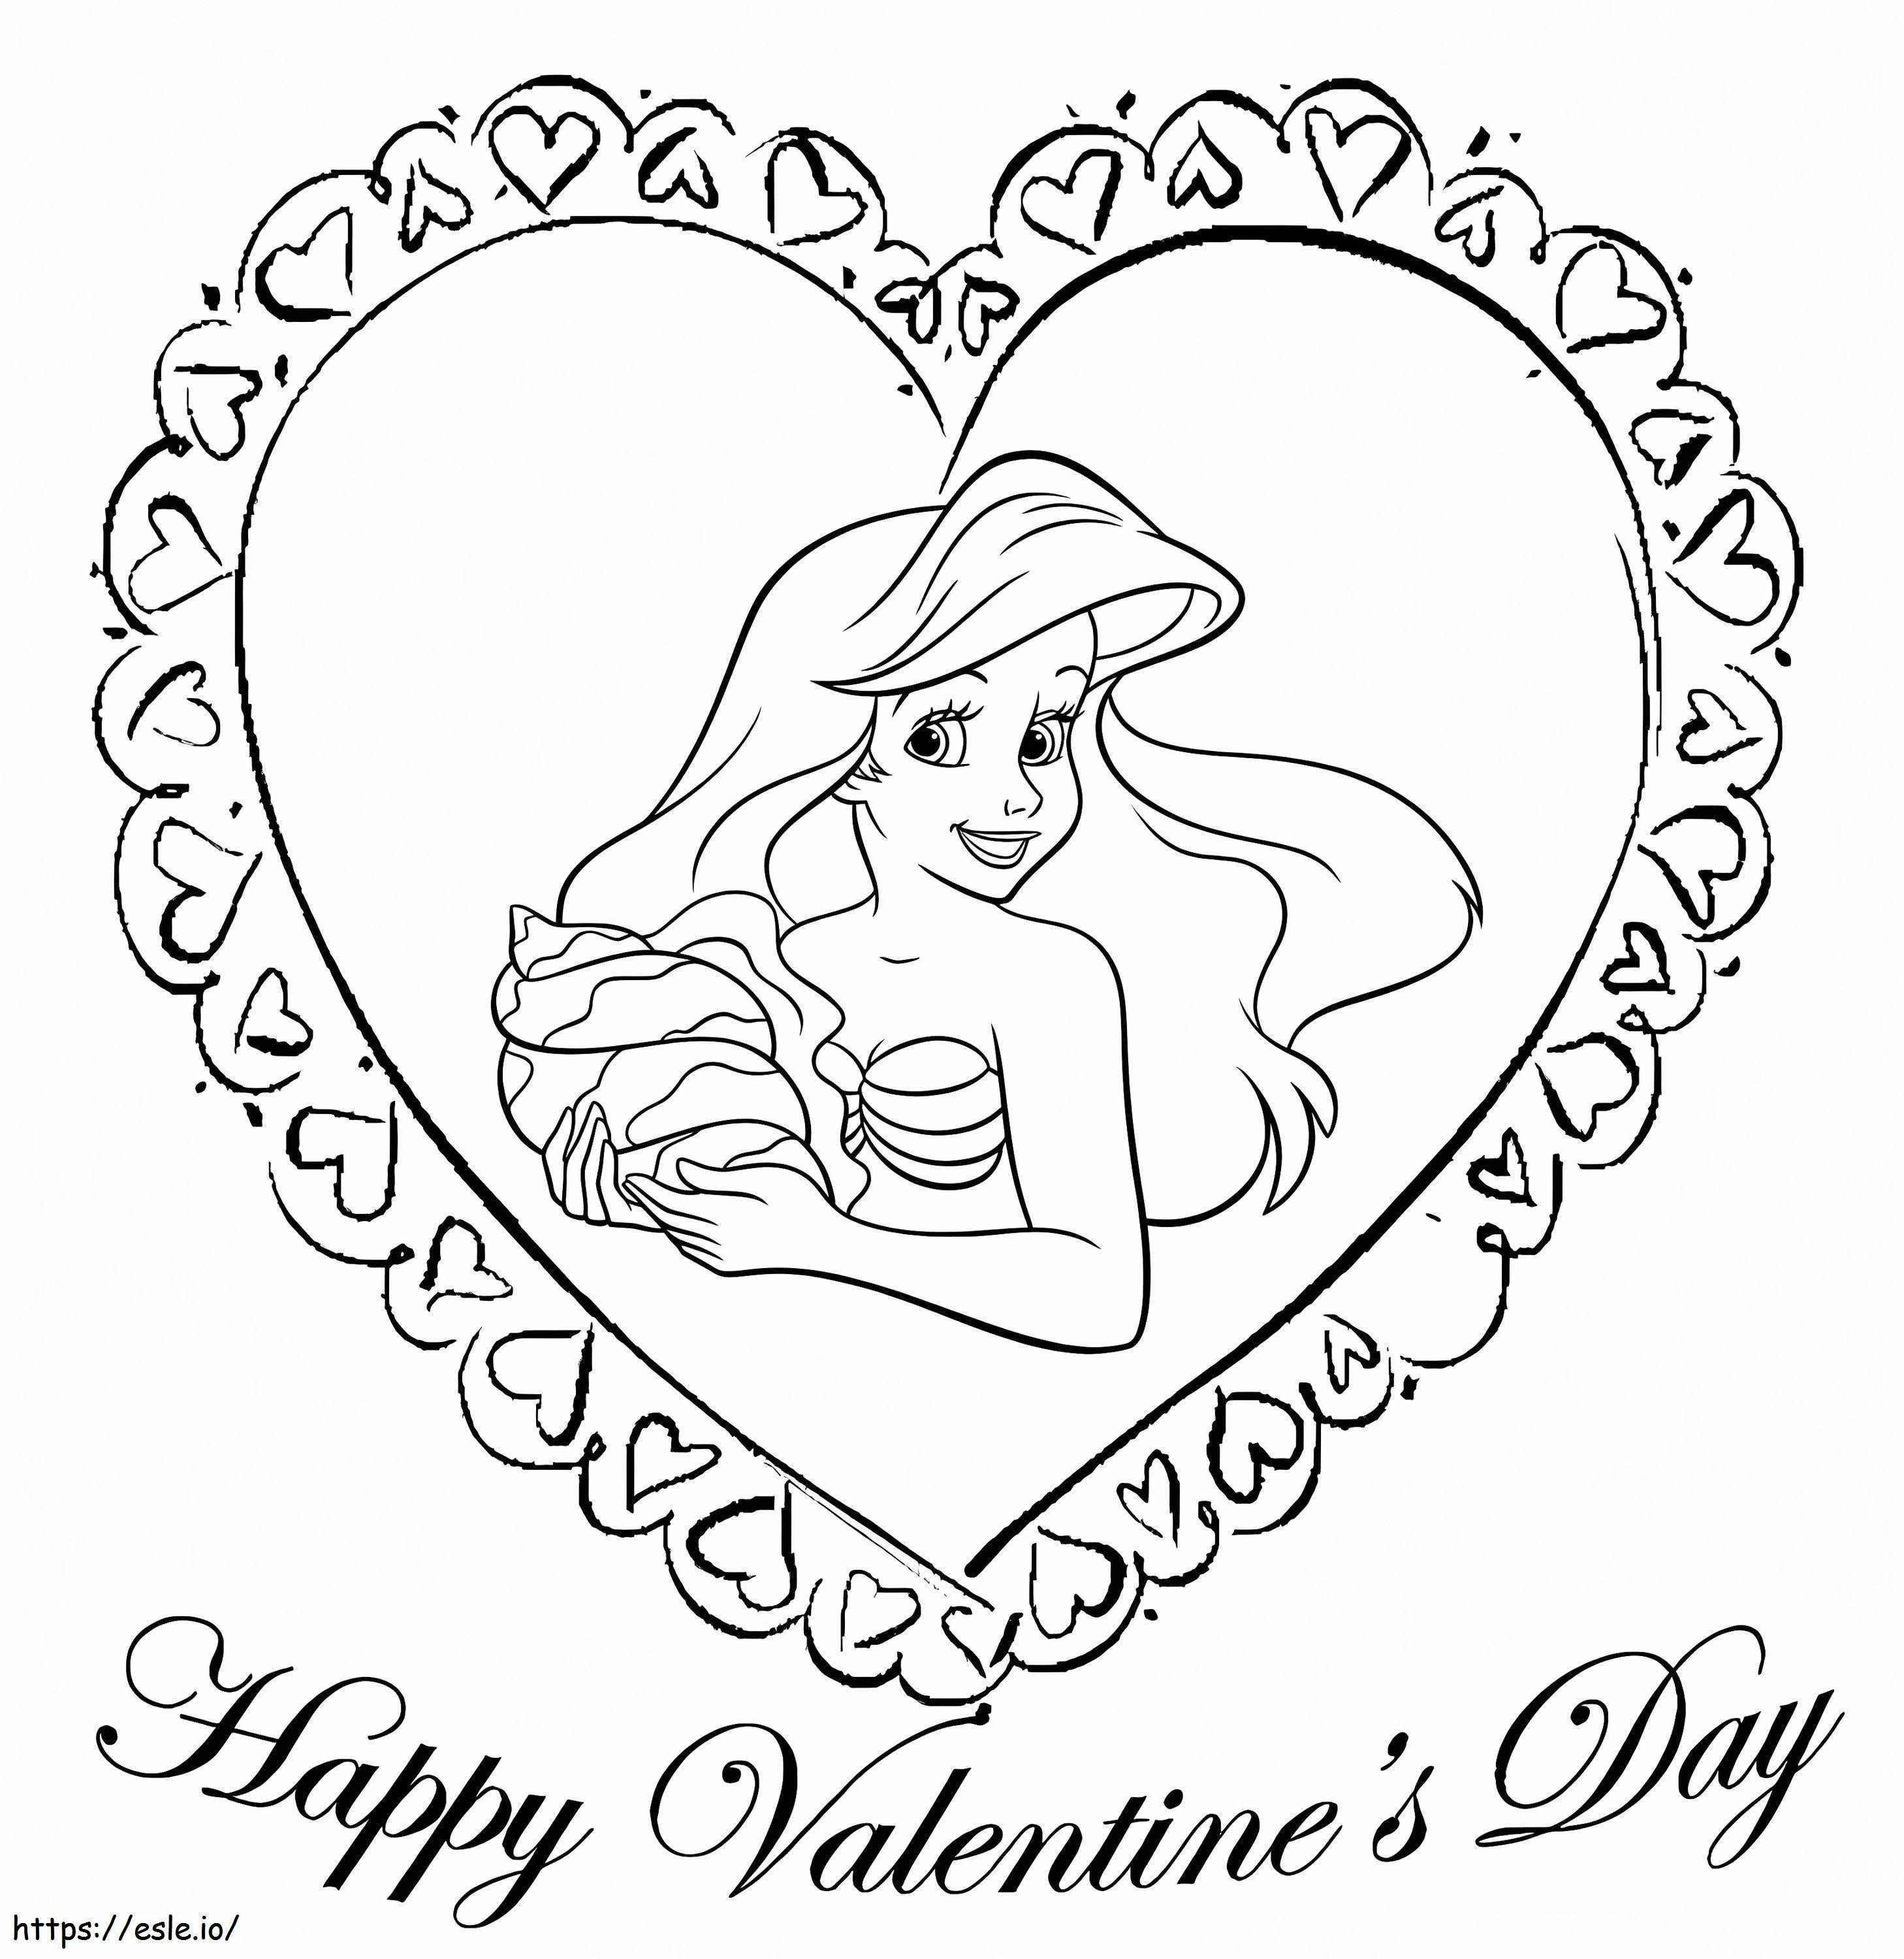 Ariel Valentine ausmalbilder